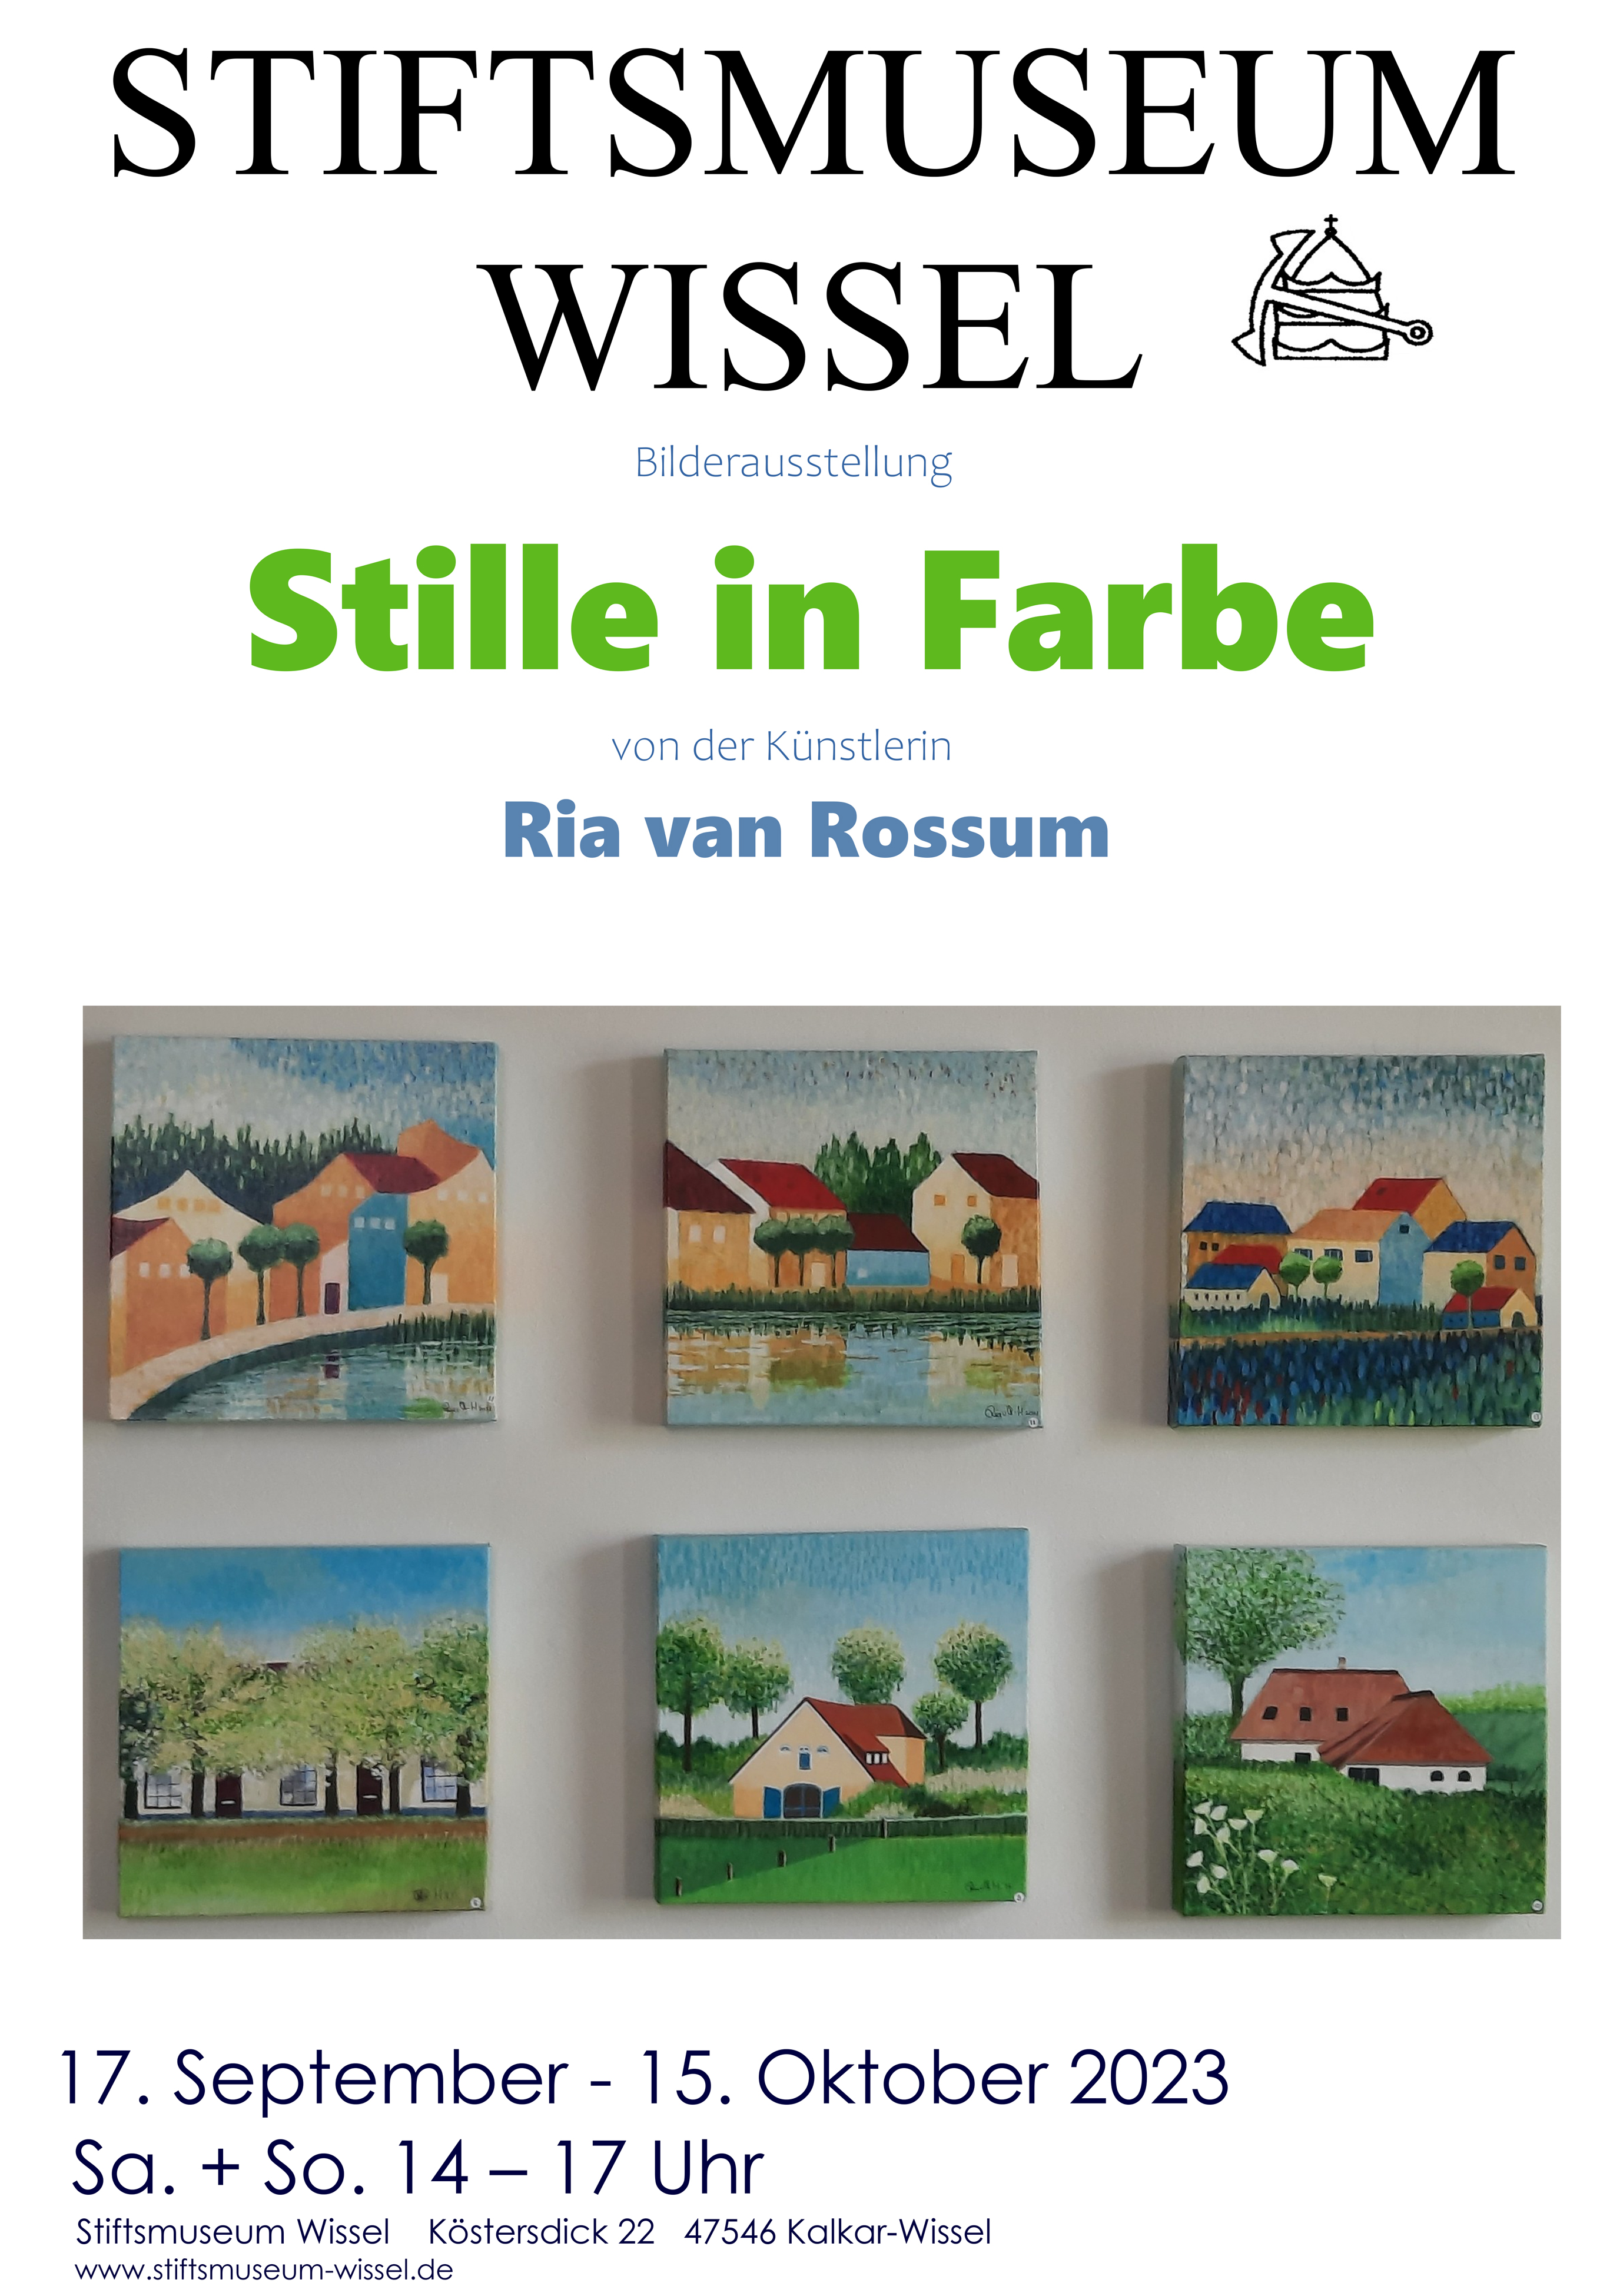 Ausstellung "Stiile in Farbe" im Stiftsmuseum Wissel